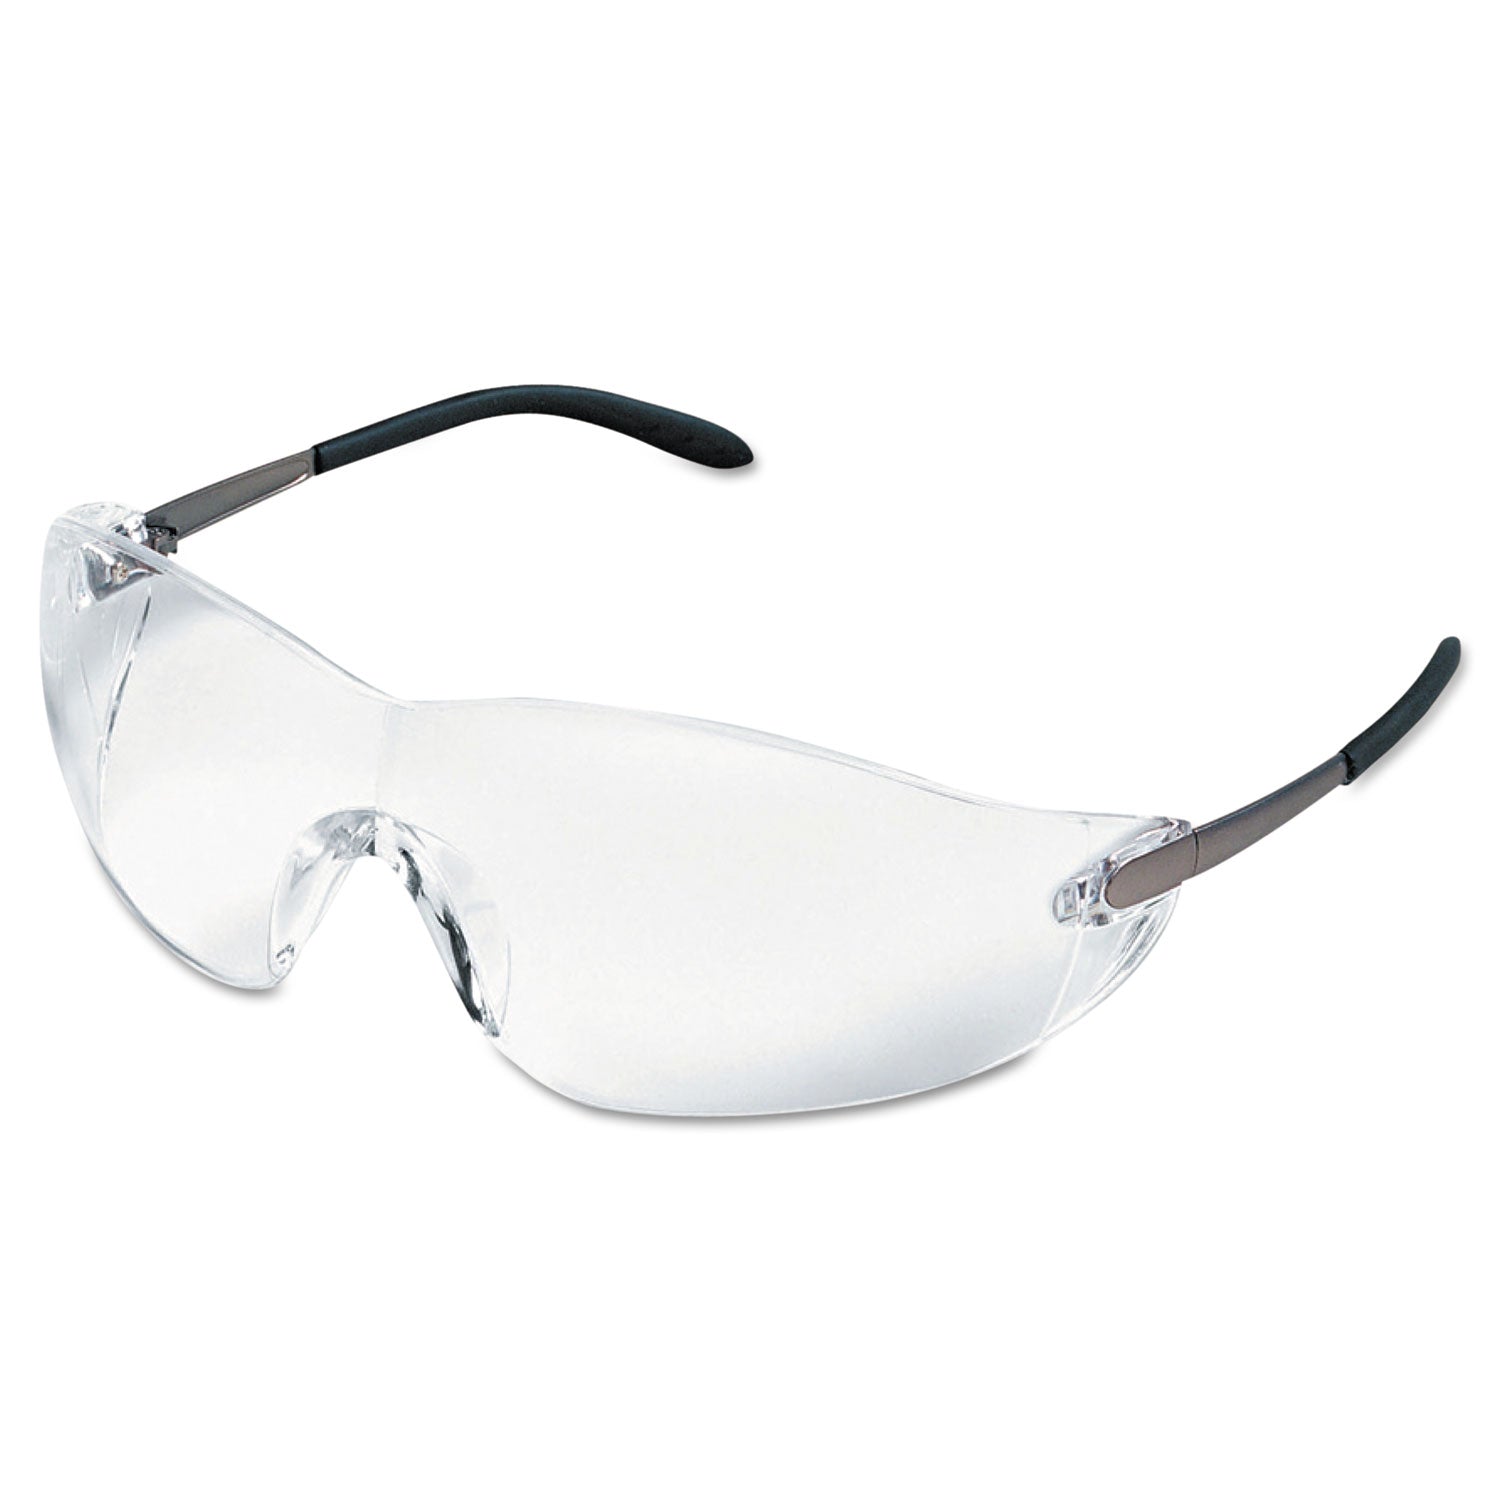 Blackjack Wraparound Safety Glasses, Chrome Plastic Frame, Clear Lens - 